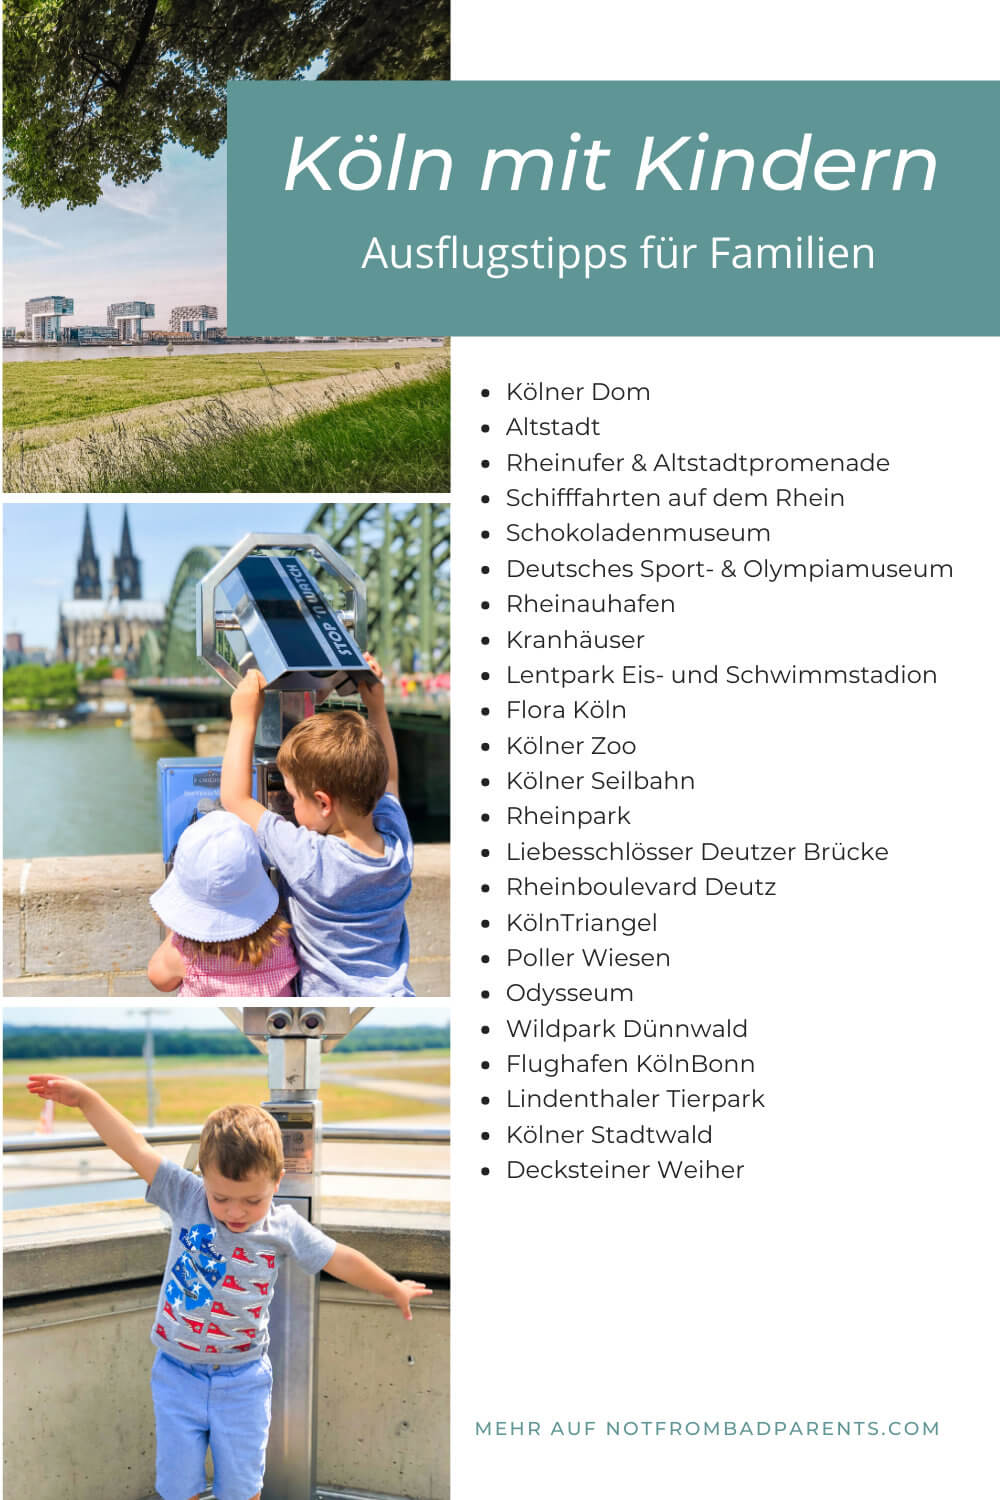 Ausflugsziele und Sehenswürdigkeiten für Familien mit Kindern in Köln, Kölner Dom